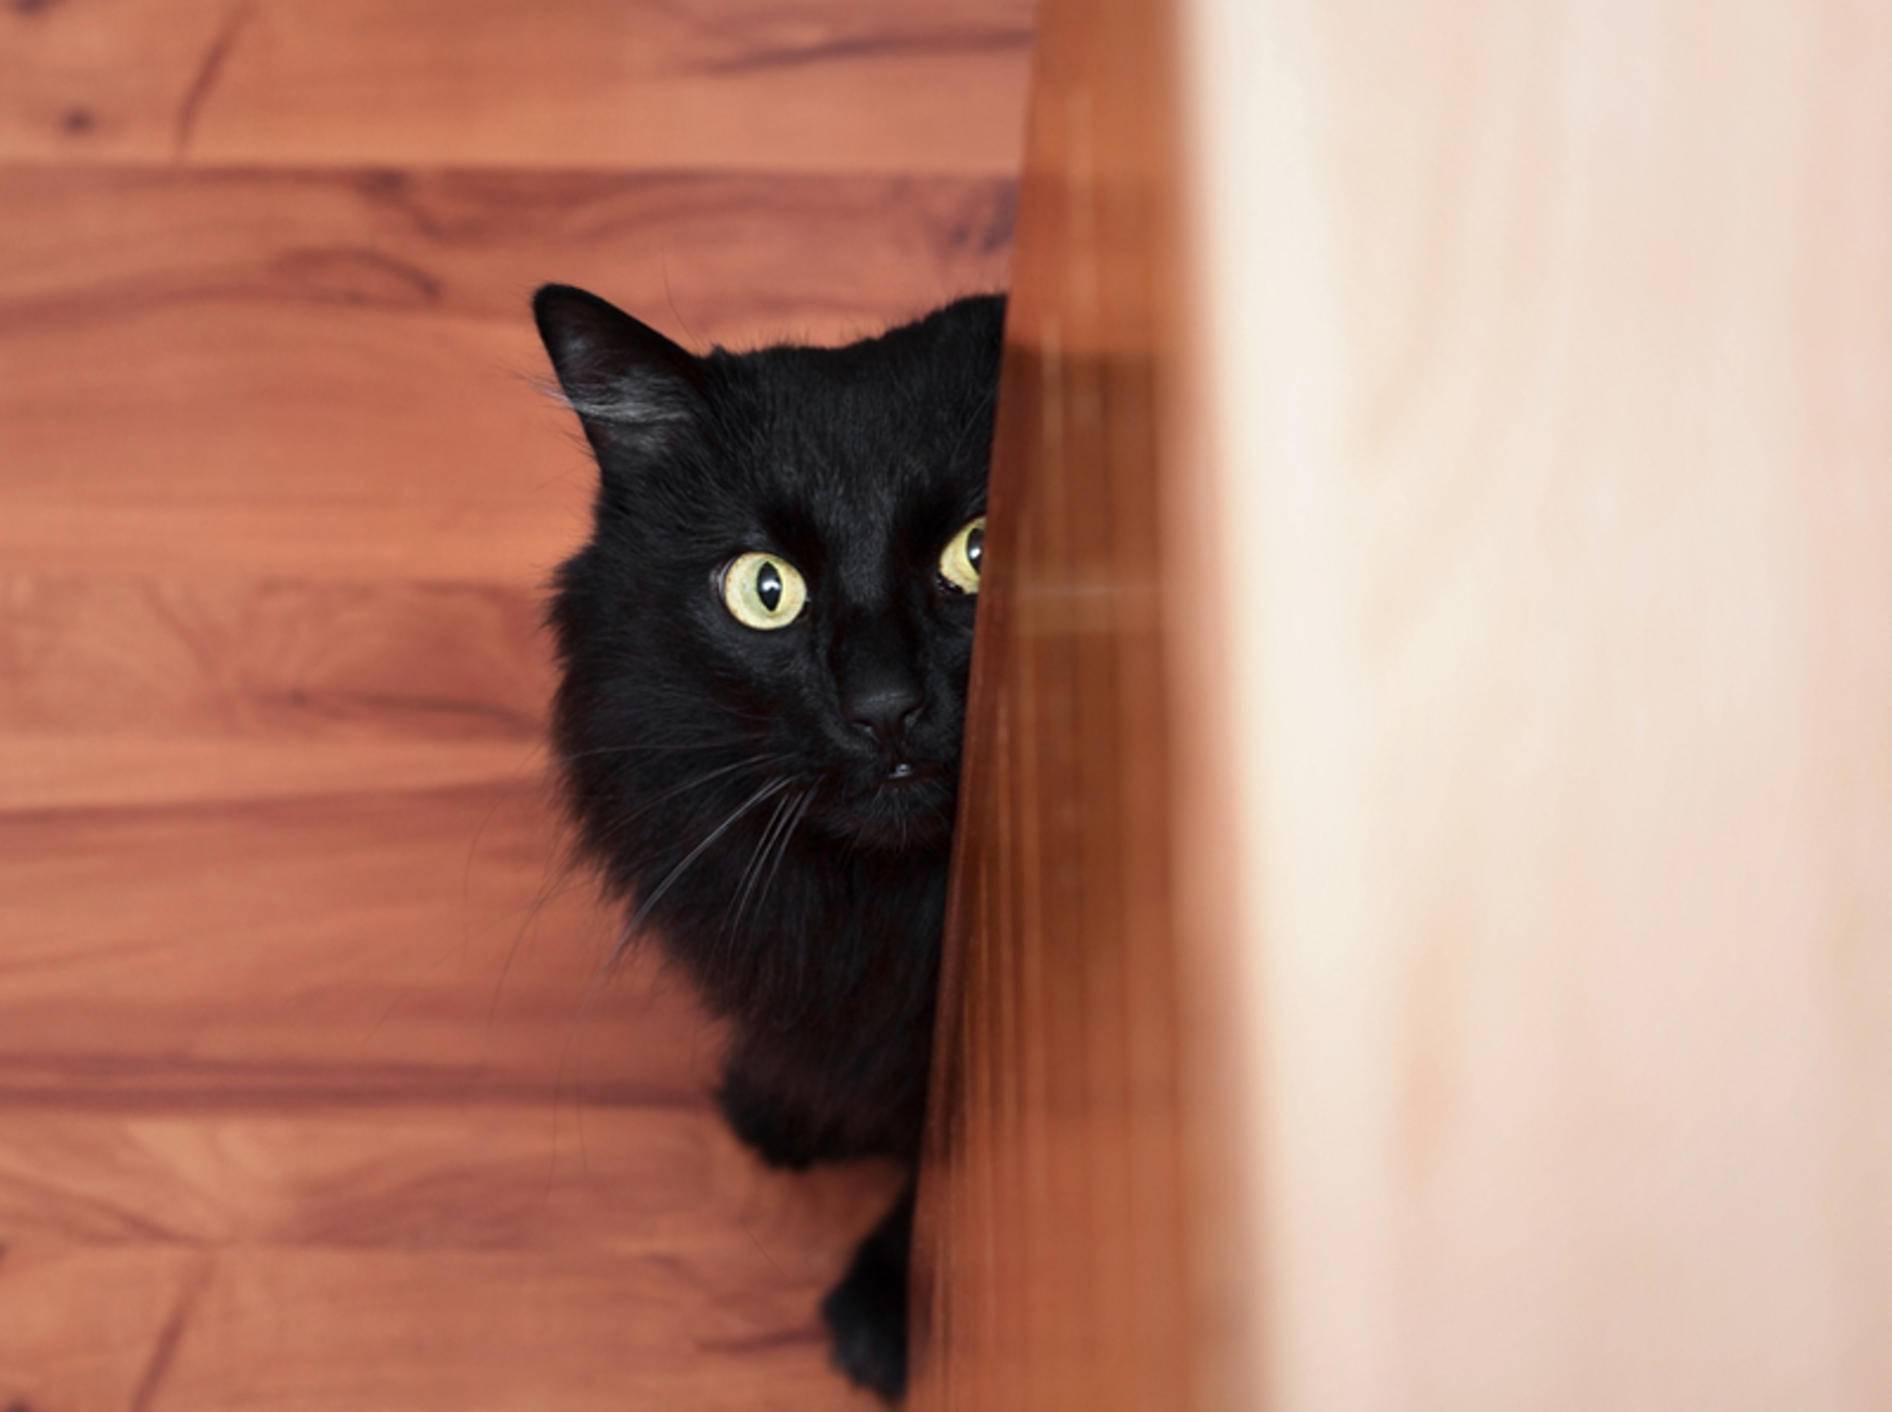 Eine Katze mit Angststörung lässt sich durchaus behandeln. – Bild: Shutterstock / misuma